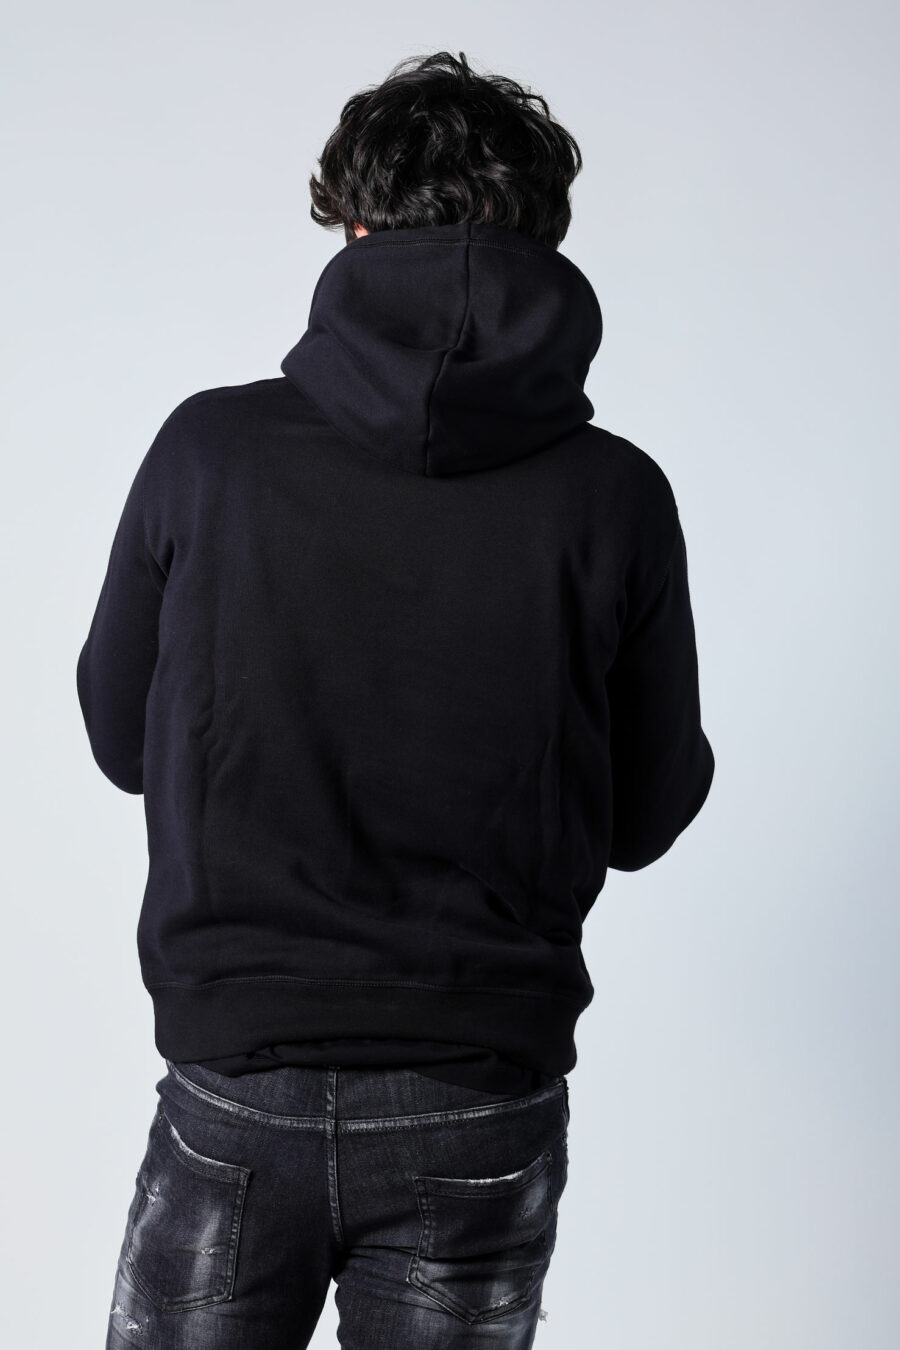 Black hooded sweatshirt with "pixeled" dog logo - Untitled Catalog 05685